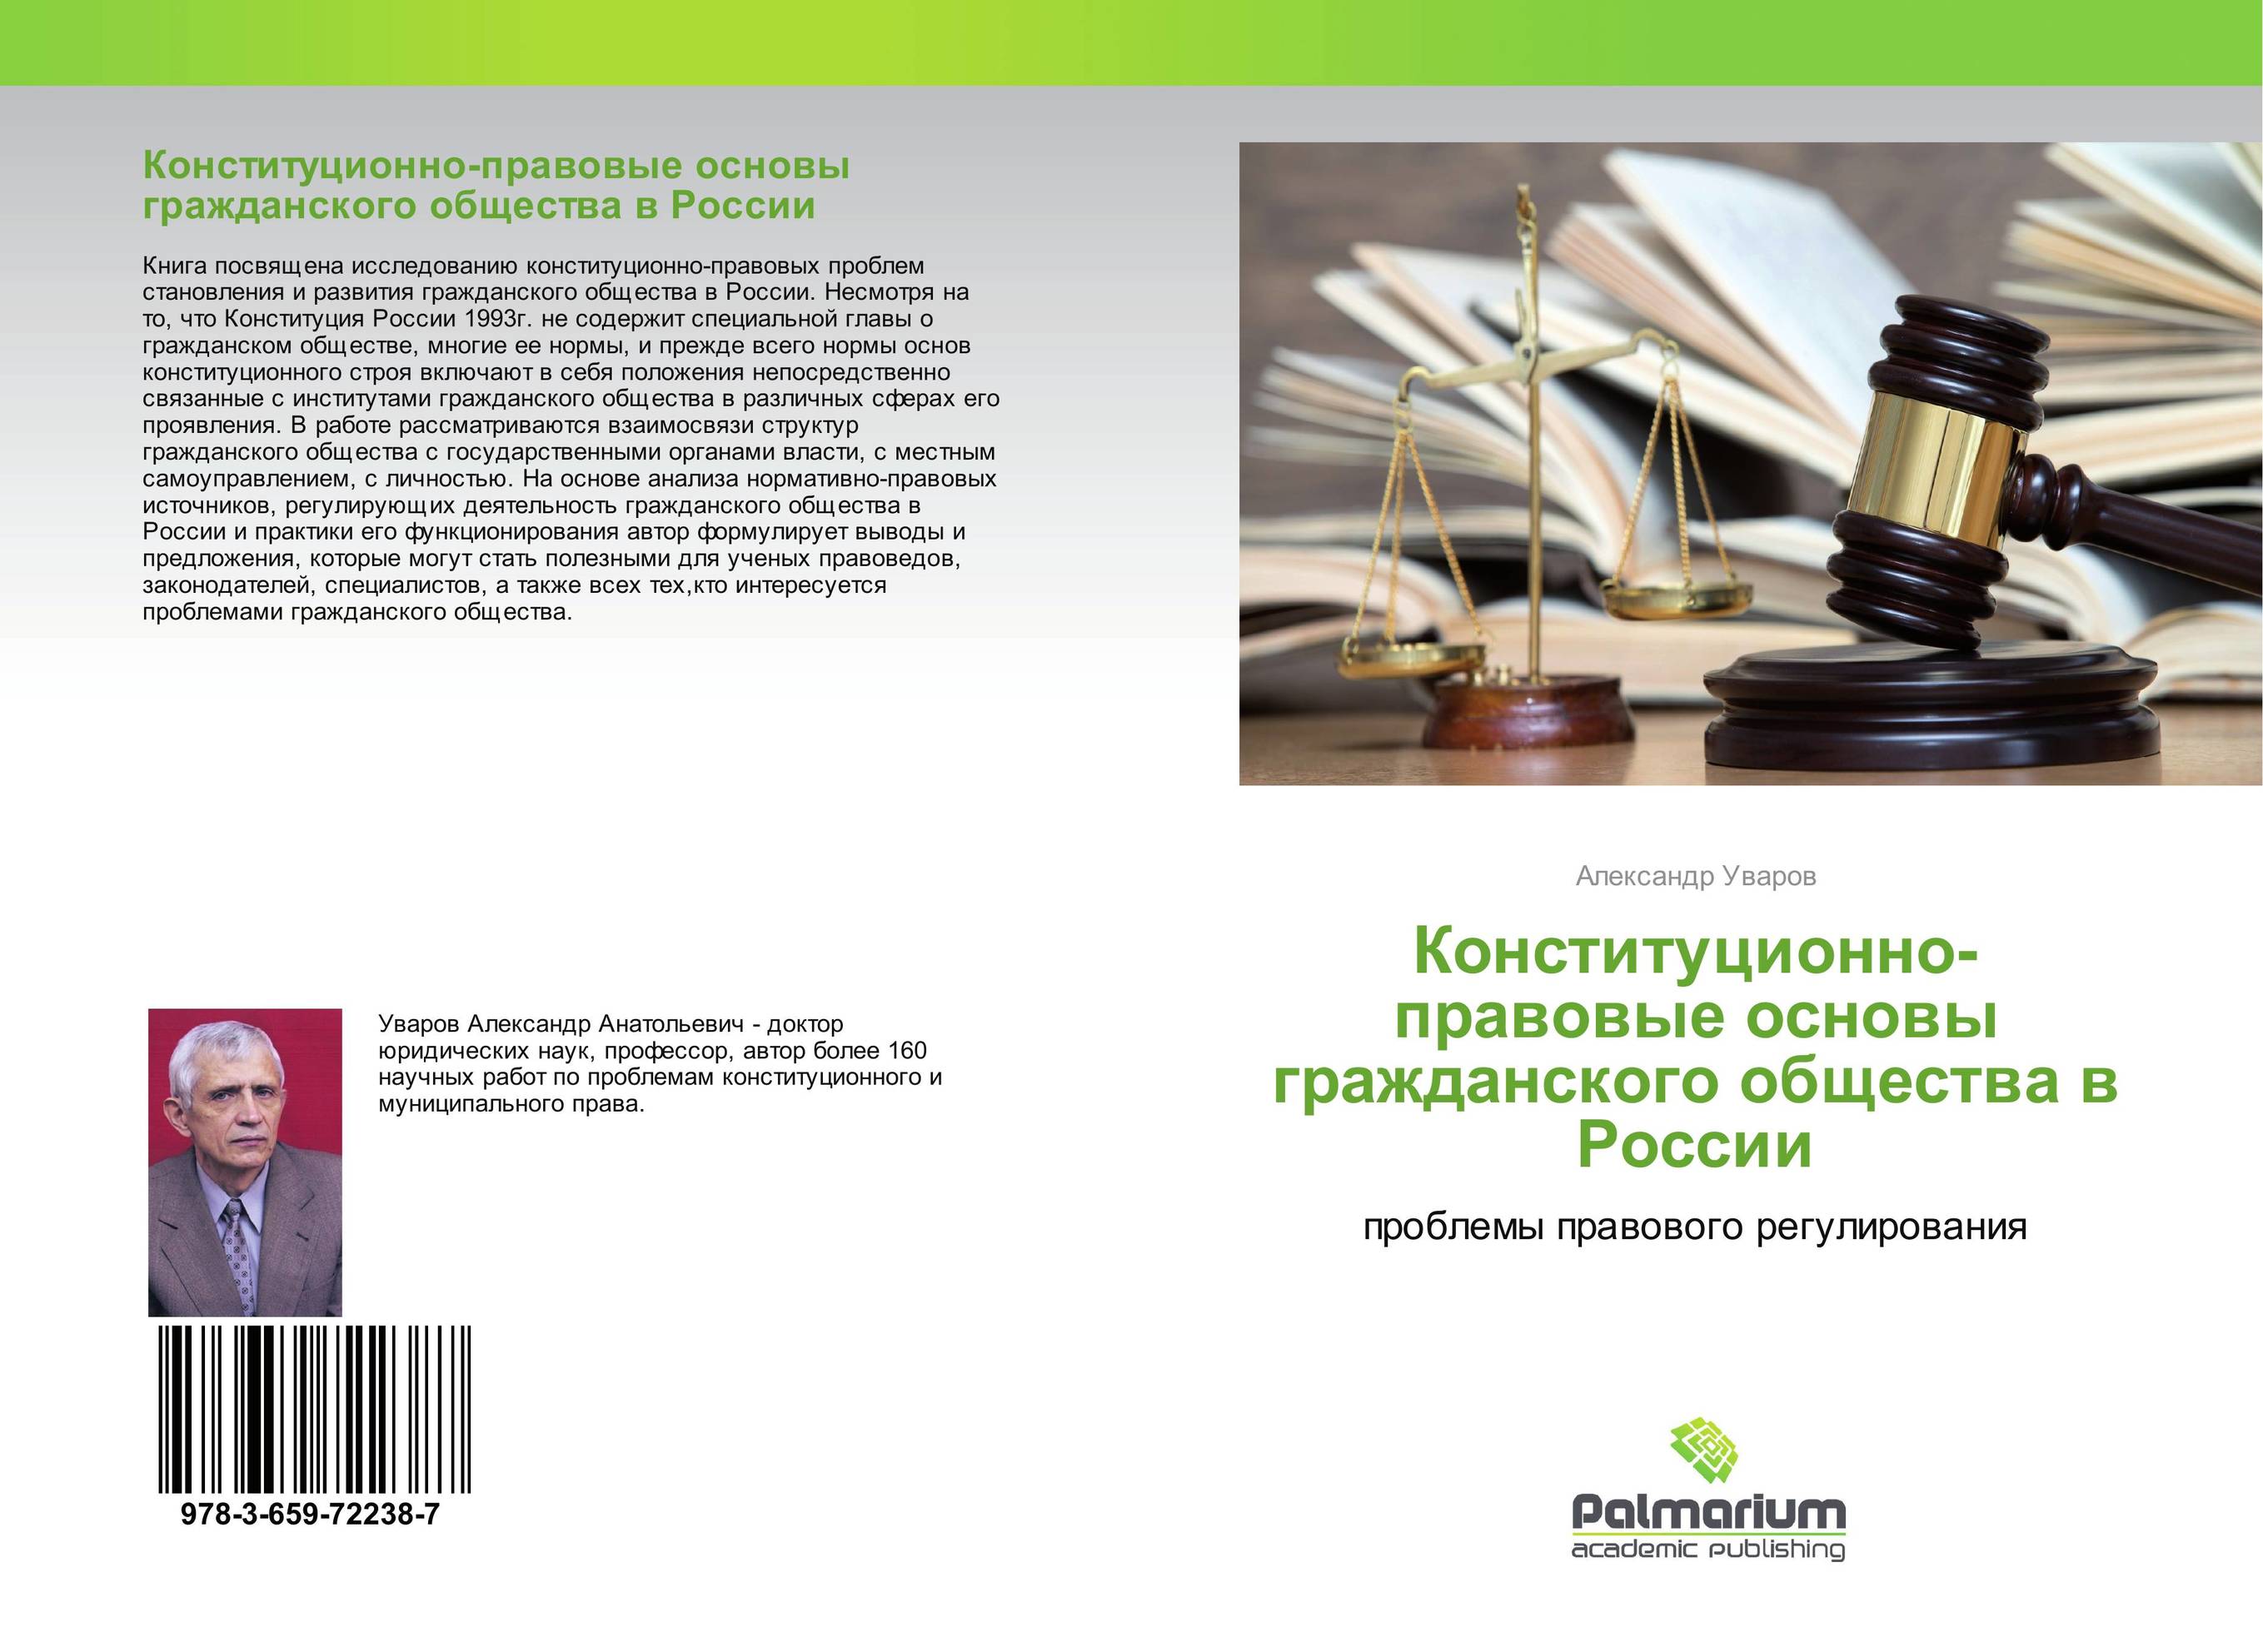 Конституционно-правовые основы гражданского общества в России. Проблемы правового регулирования.